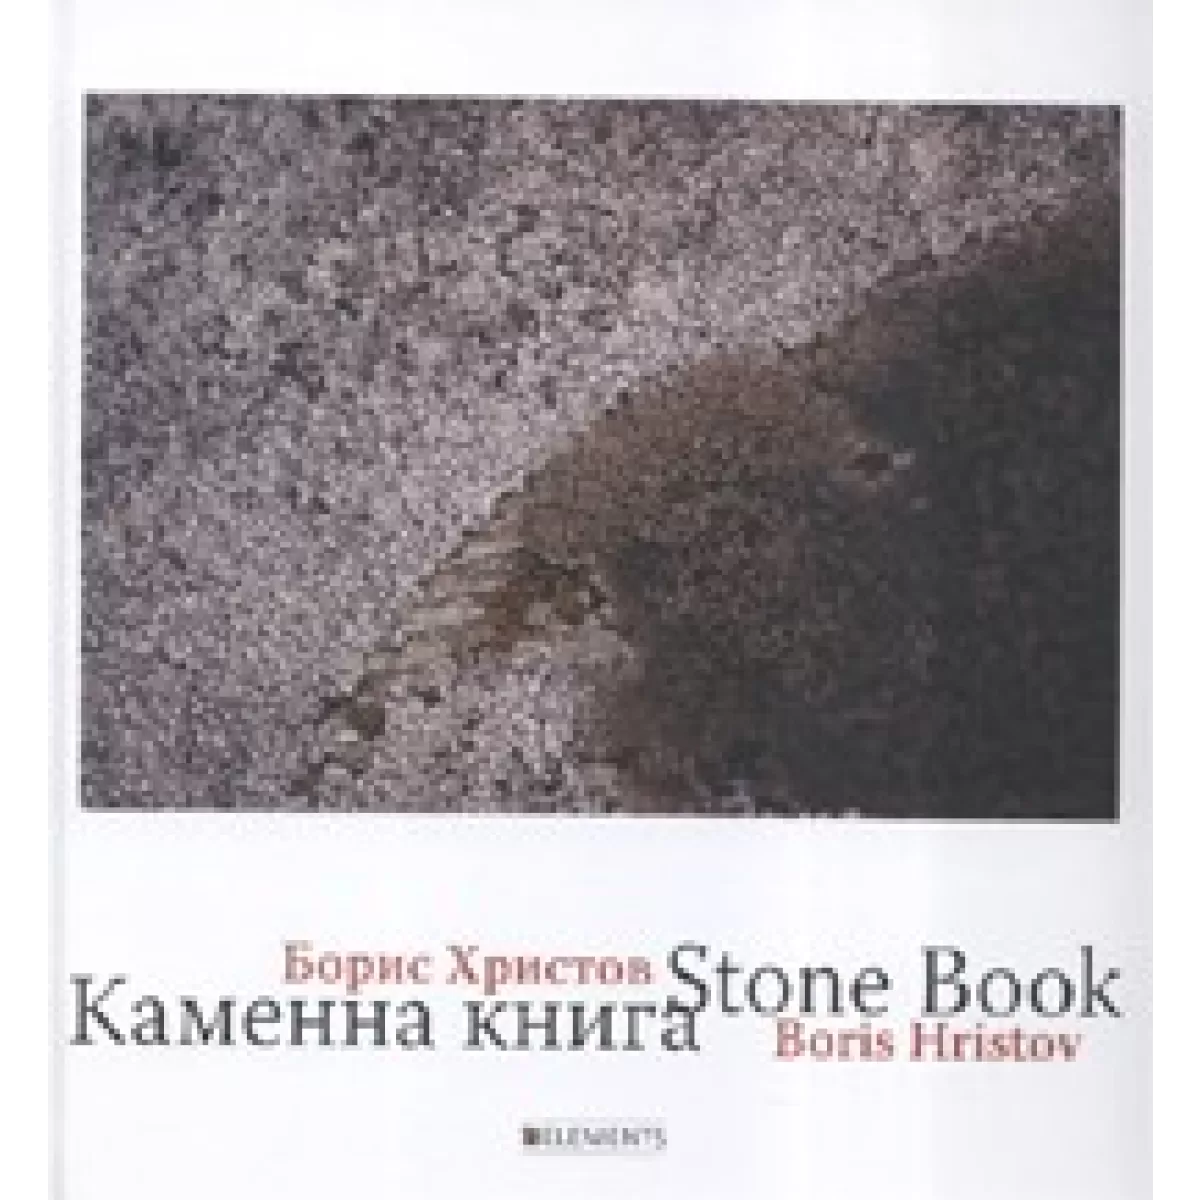 Каменна книга / Stone book